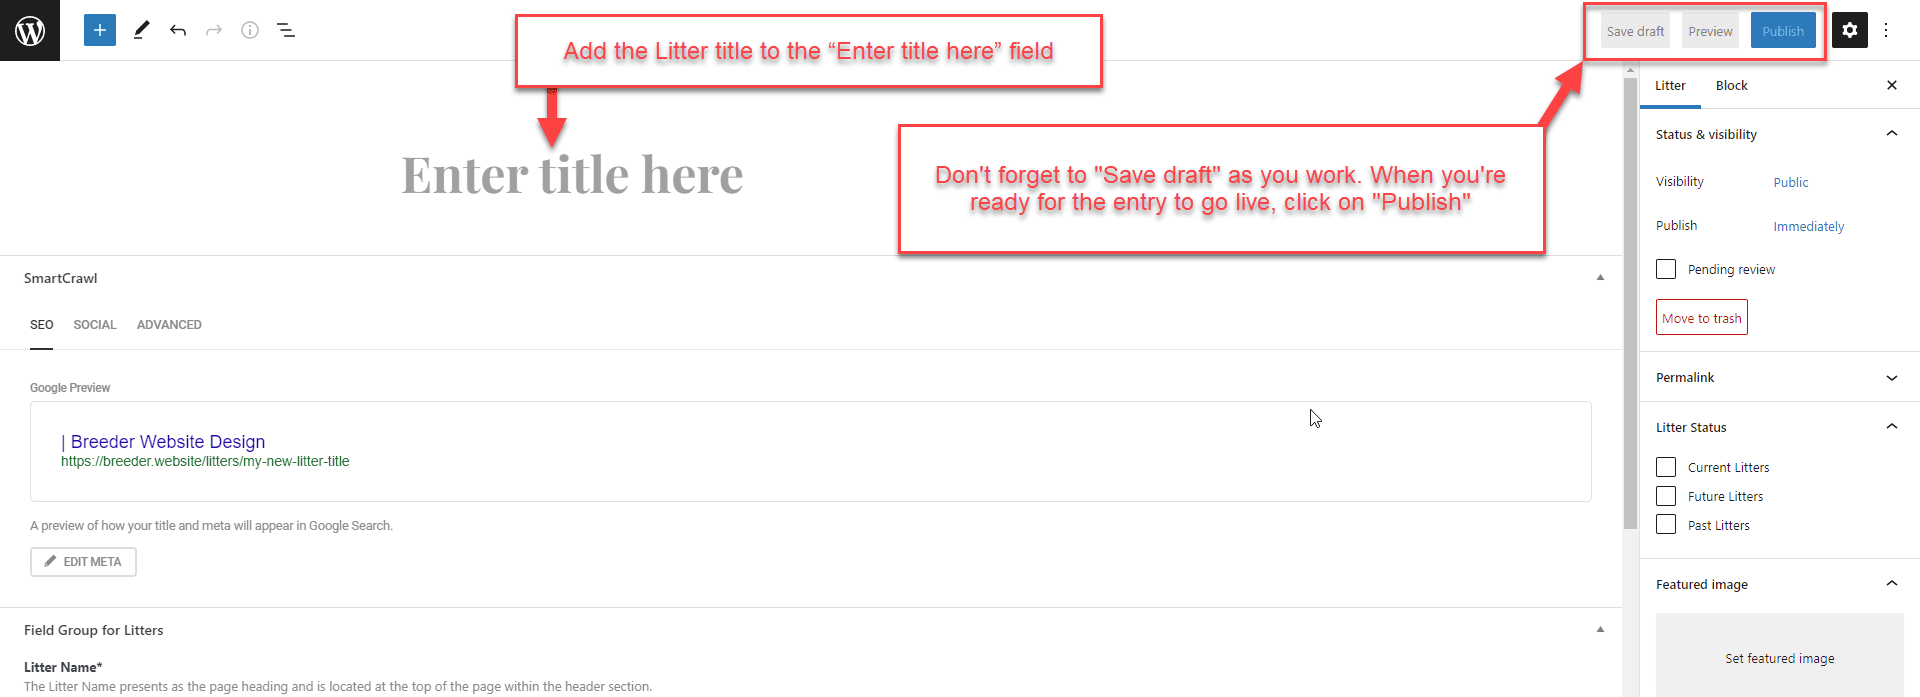 Litters - Add Page Title Screenshot